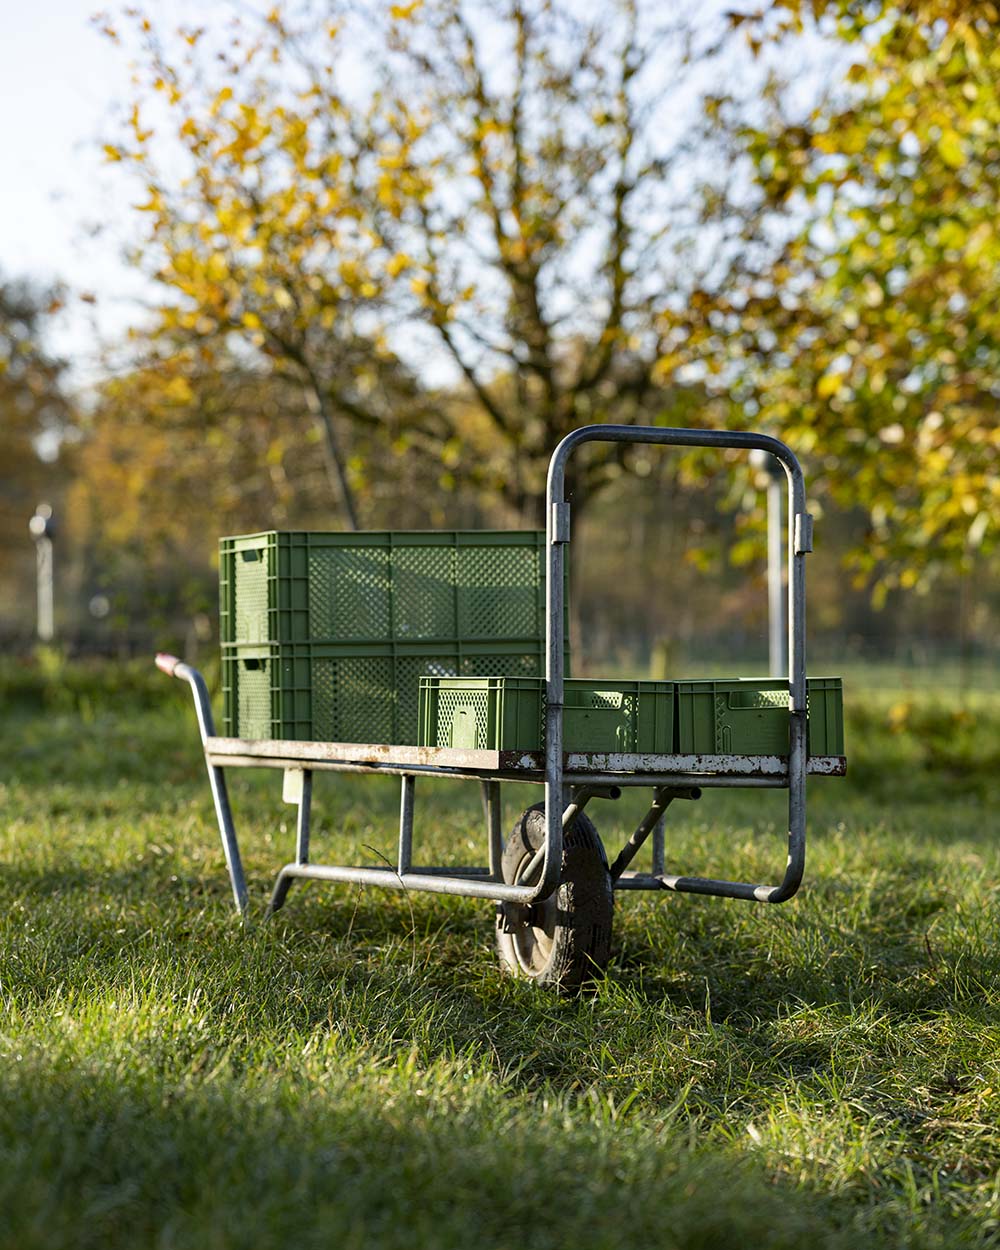 Grüne Kisten stehtn auf einem Rollwagen auf der Wiese. Das Grätnerteam um Arne von Schulz erntet im Herbst diverse Sorte Gemüse, darunter Spinat, Grünkohl oder Feldsalat. Alle Sorten des Demeter Betriebs sind samenfest..